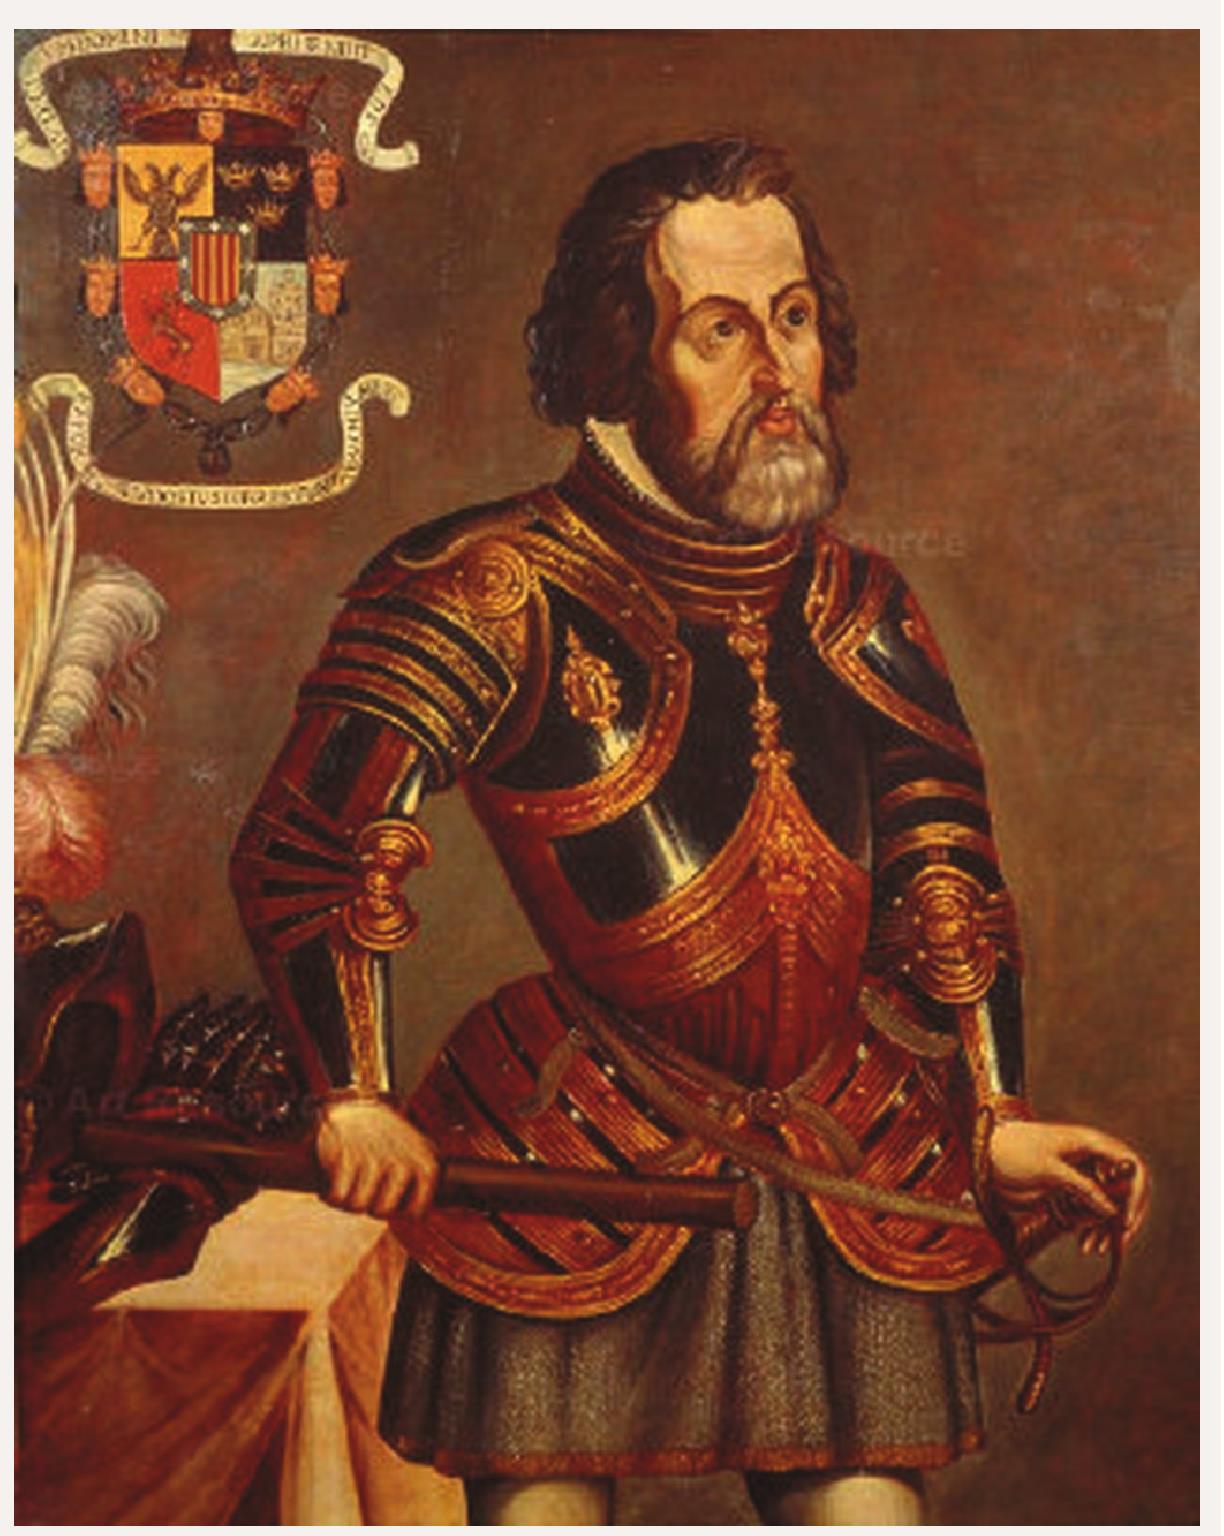 西班牙探险家埃尔南·科尔特斯在墨西哥建立殖民地